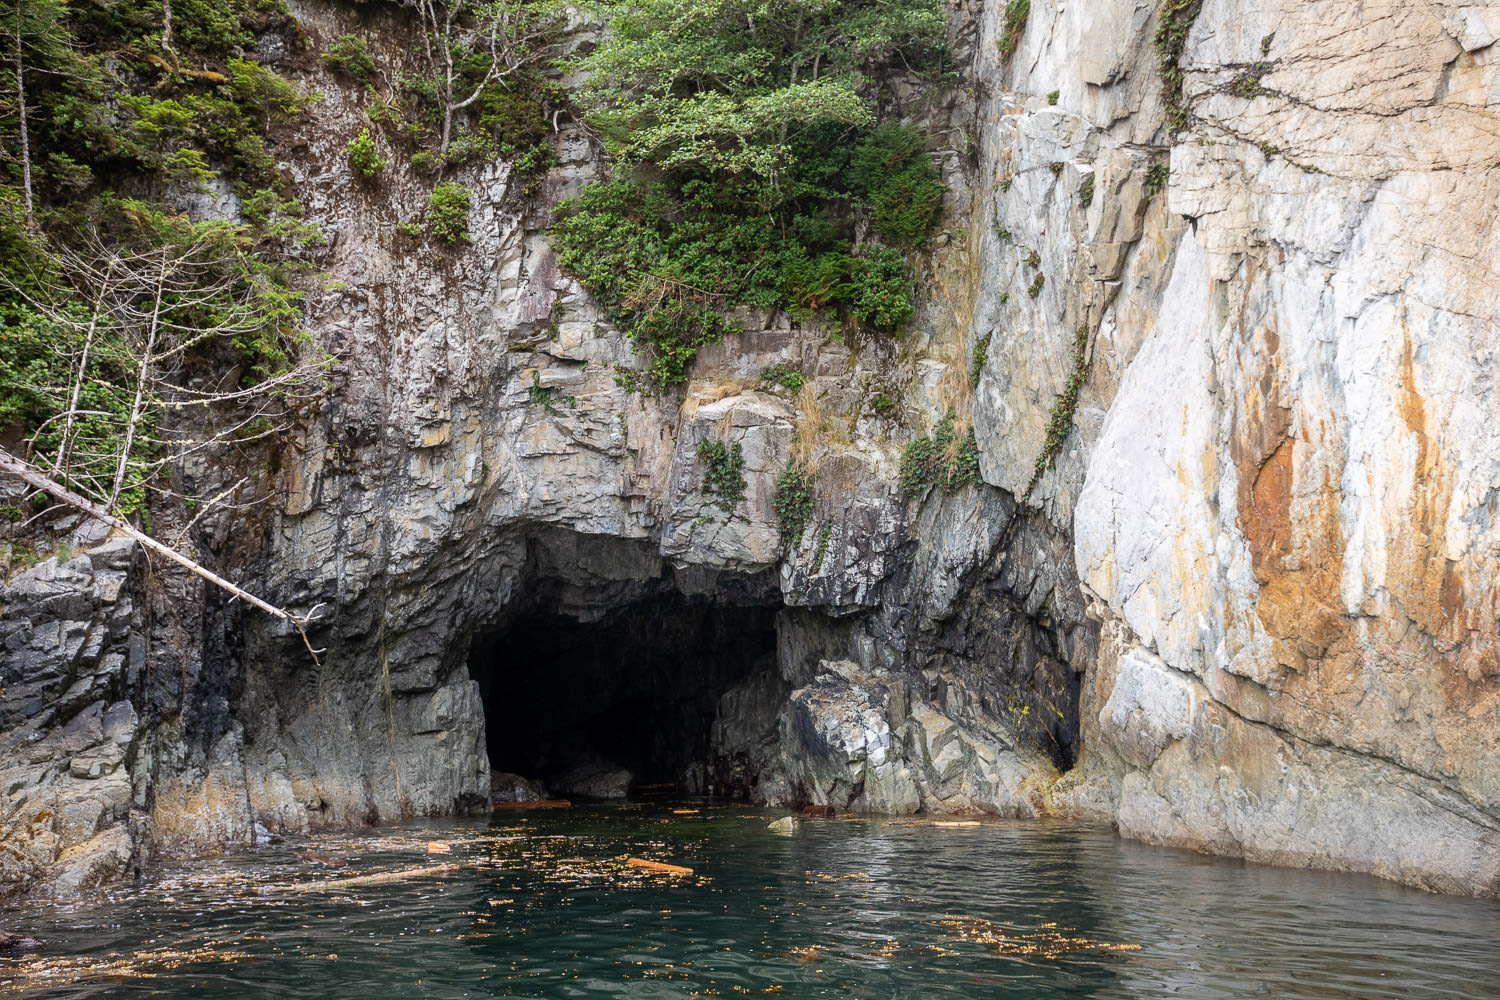 Sea cave along the coast.